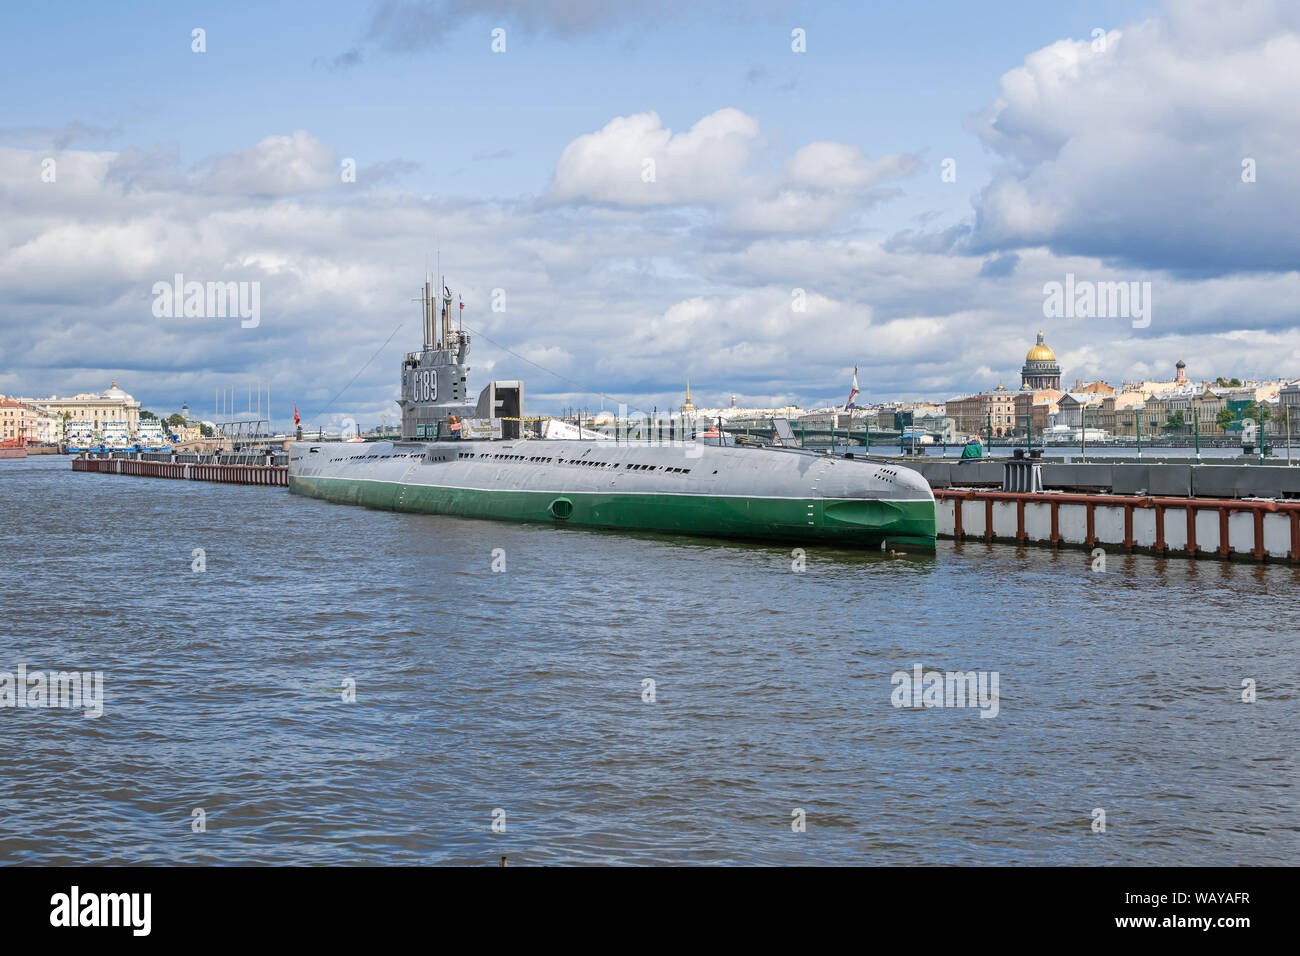 Saint Petersburg, Russie - Août 3, 2019 : Ouvert au public musée sous-marin soviétique C-189 (S-189), un 613-classe de sous-marins diesel-électrique ancho Banque D'Images